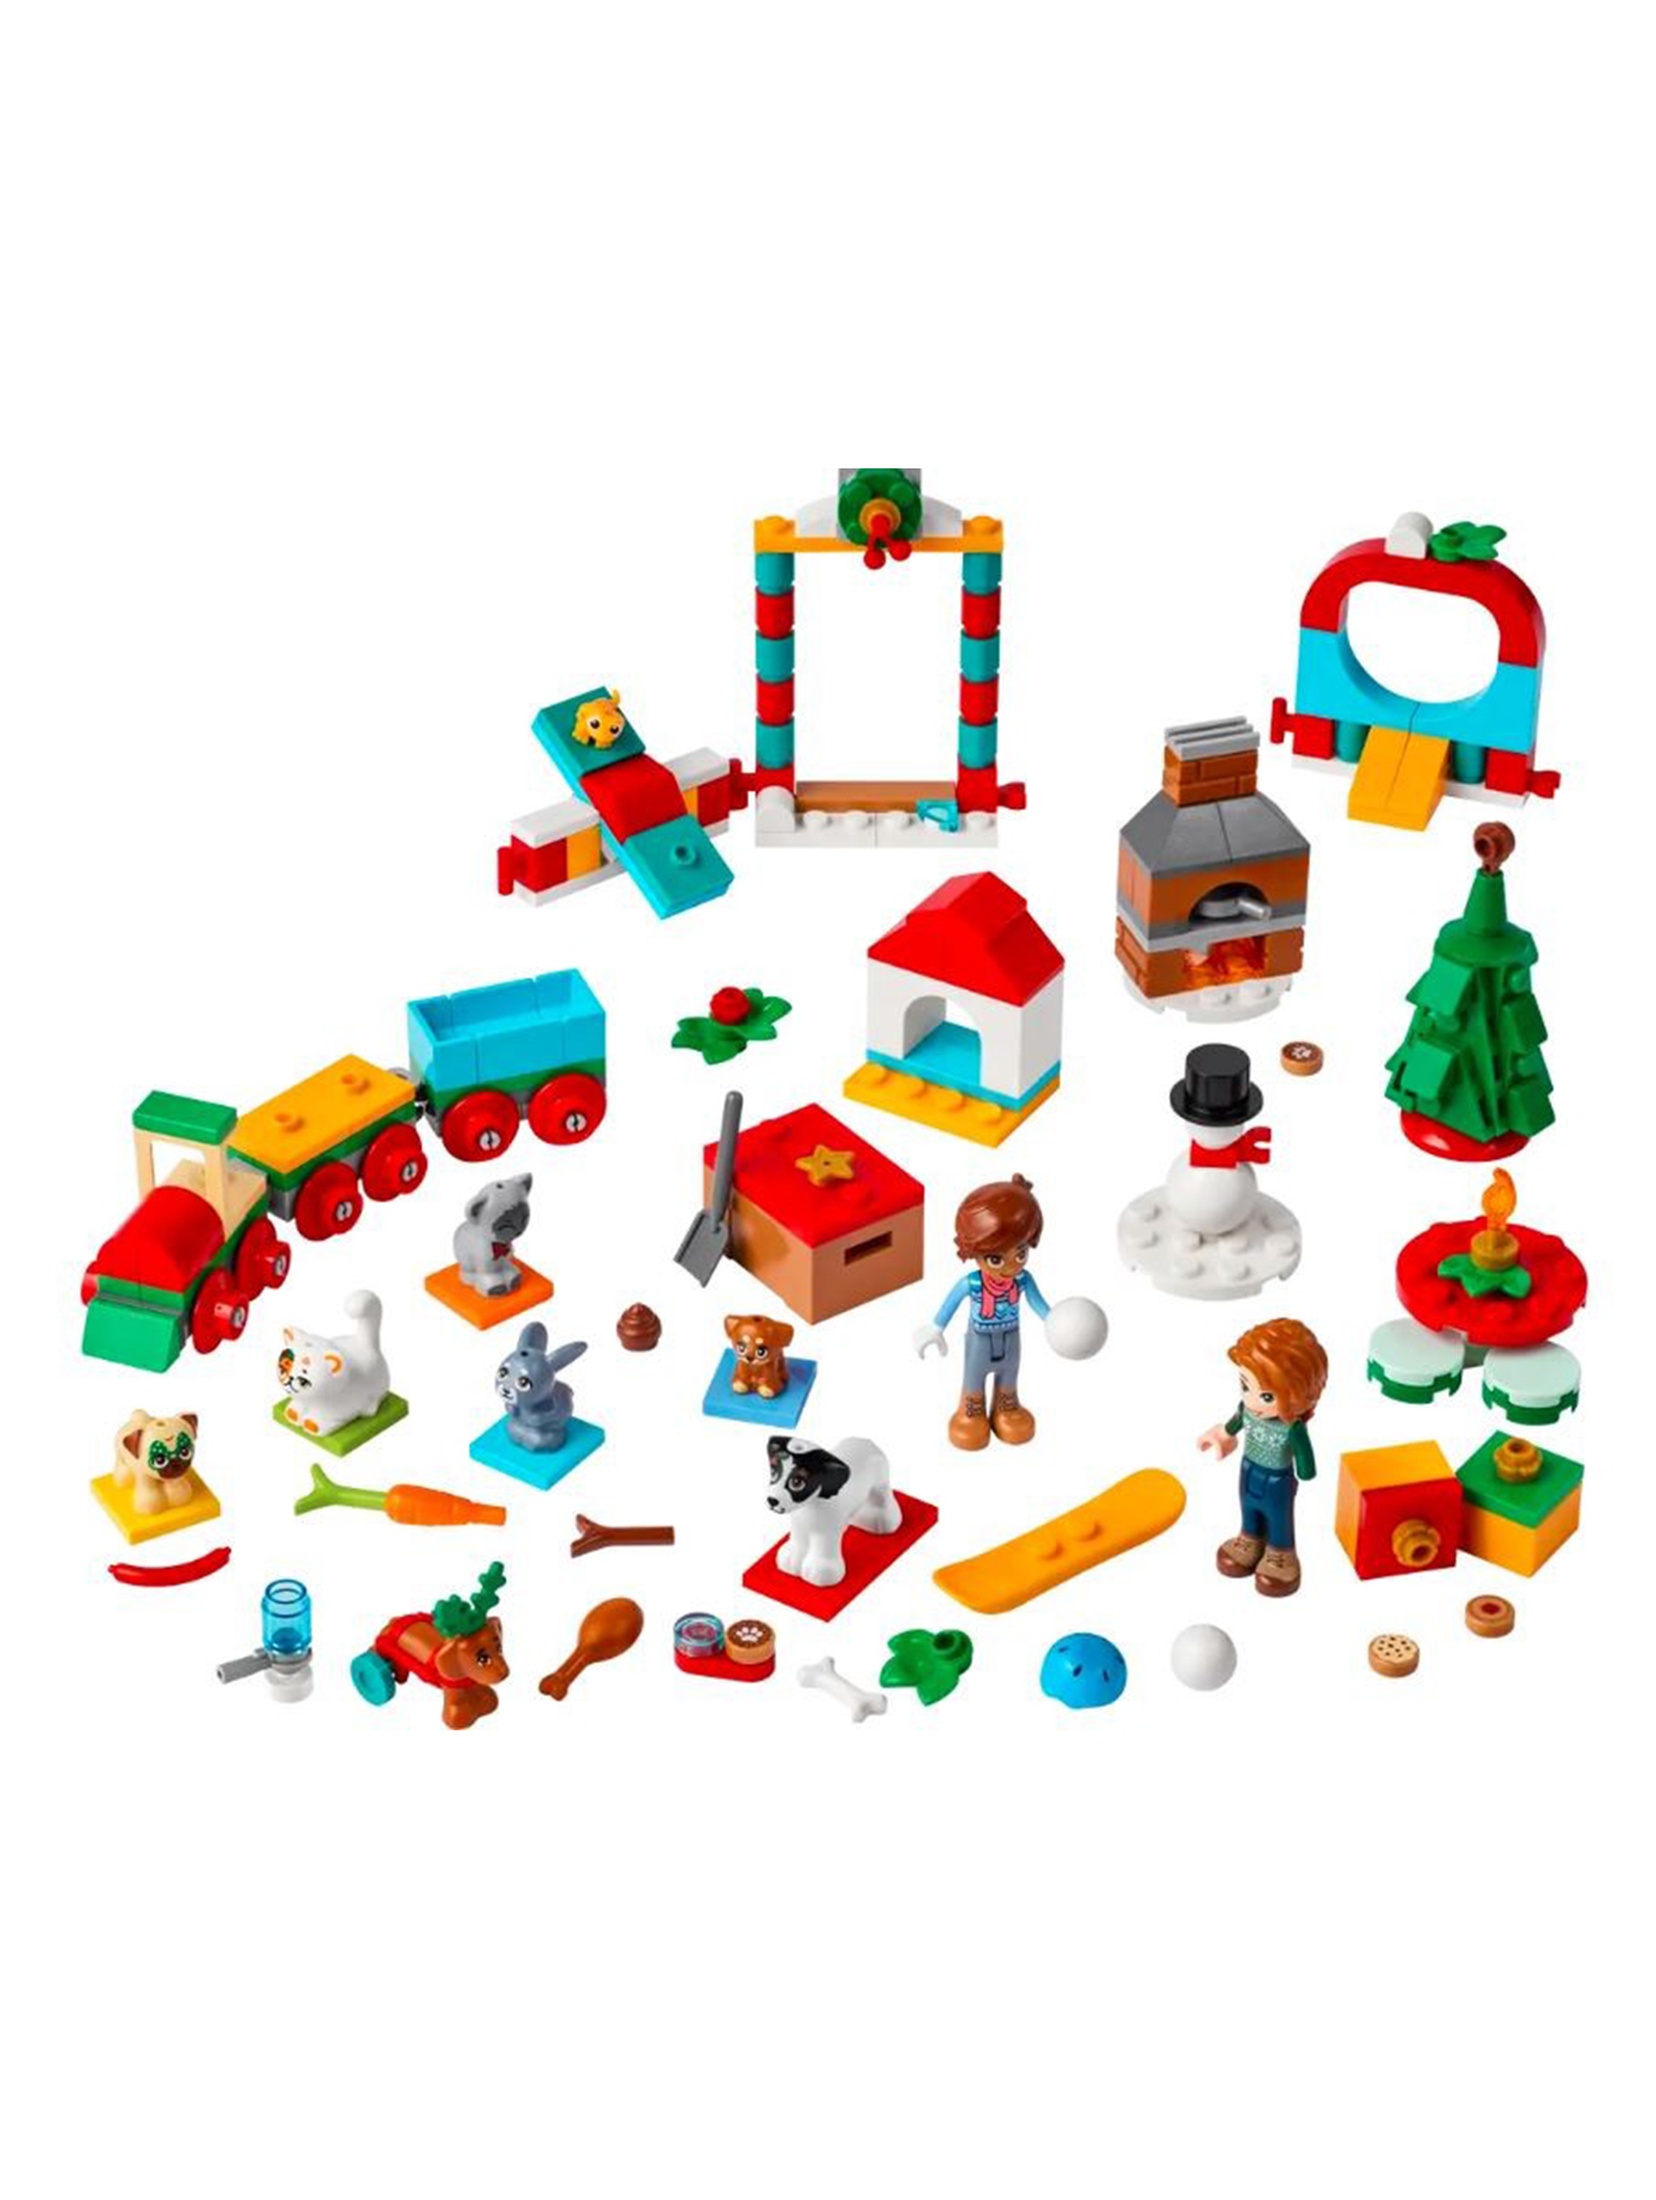 Klocki LEGO Friends 41758 - Kalendarz adwentowy